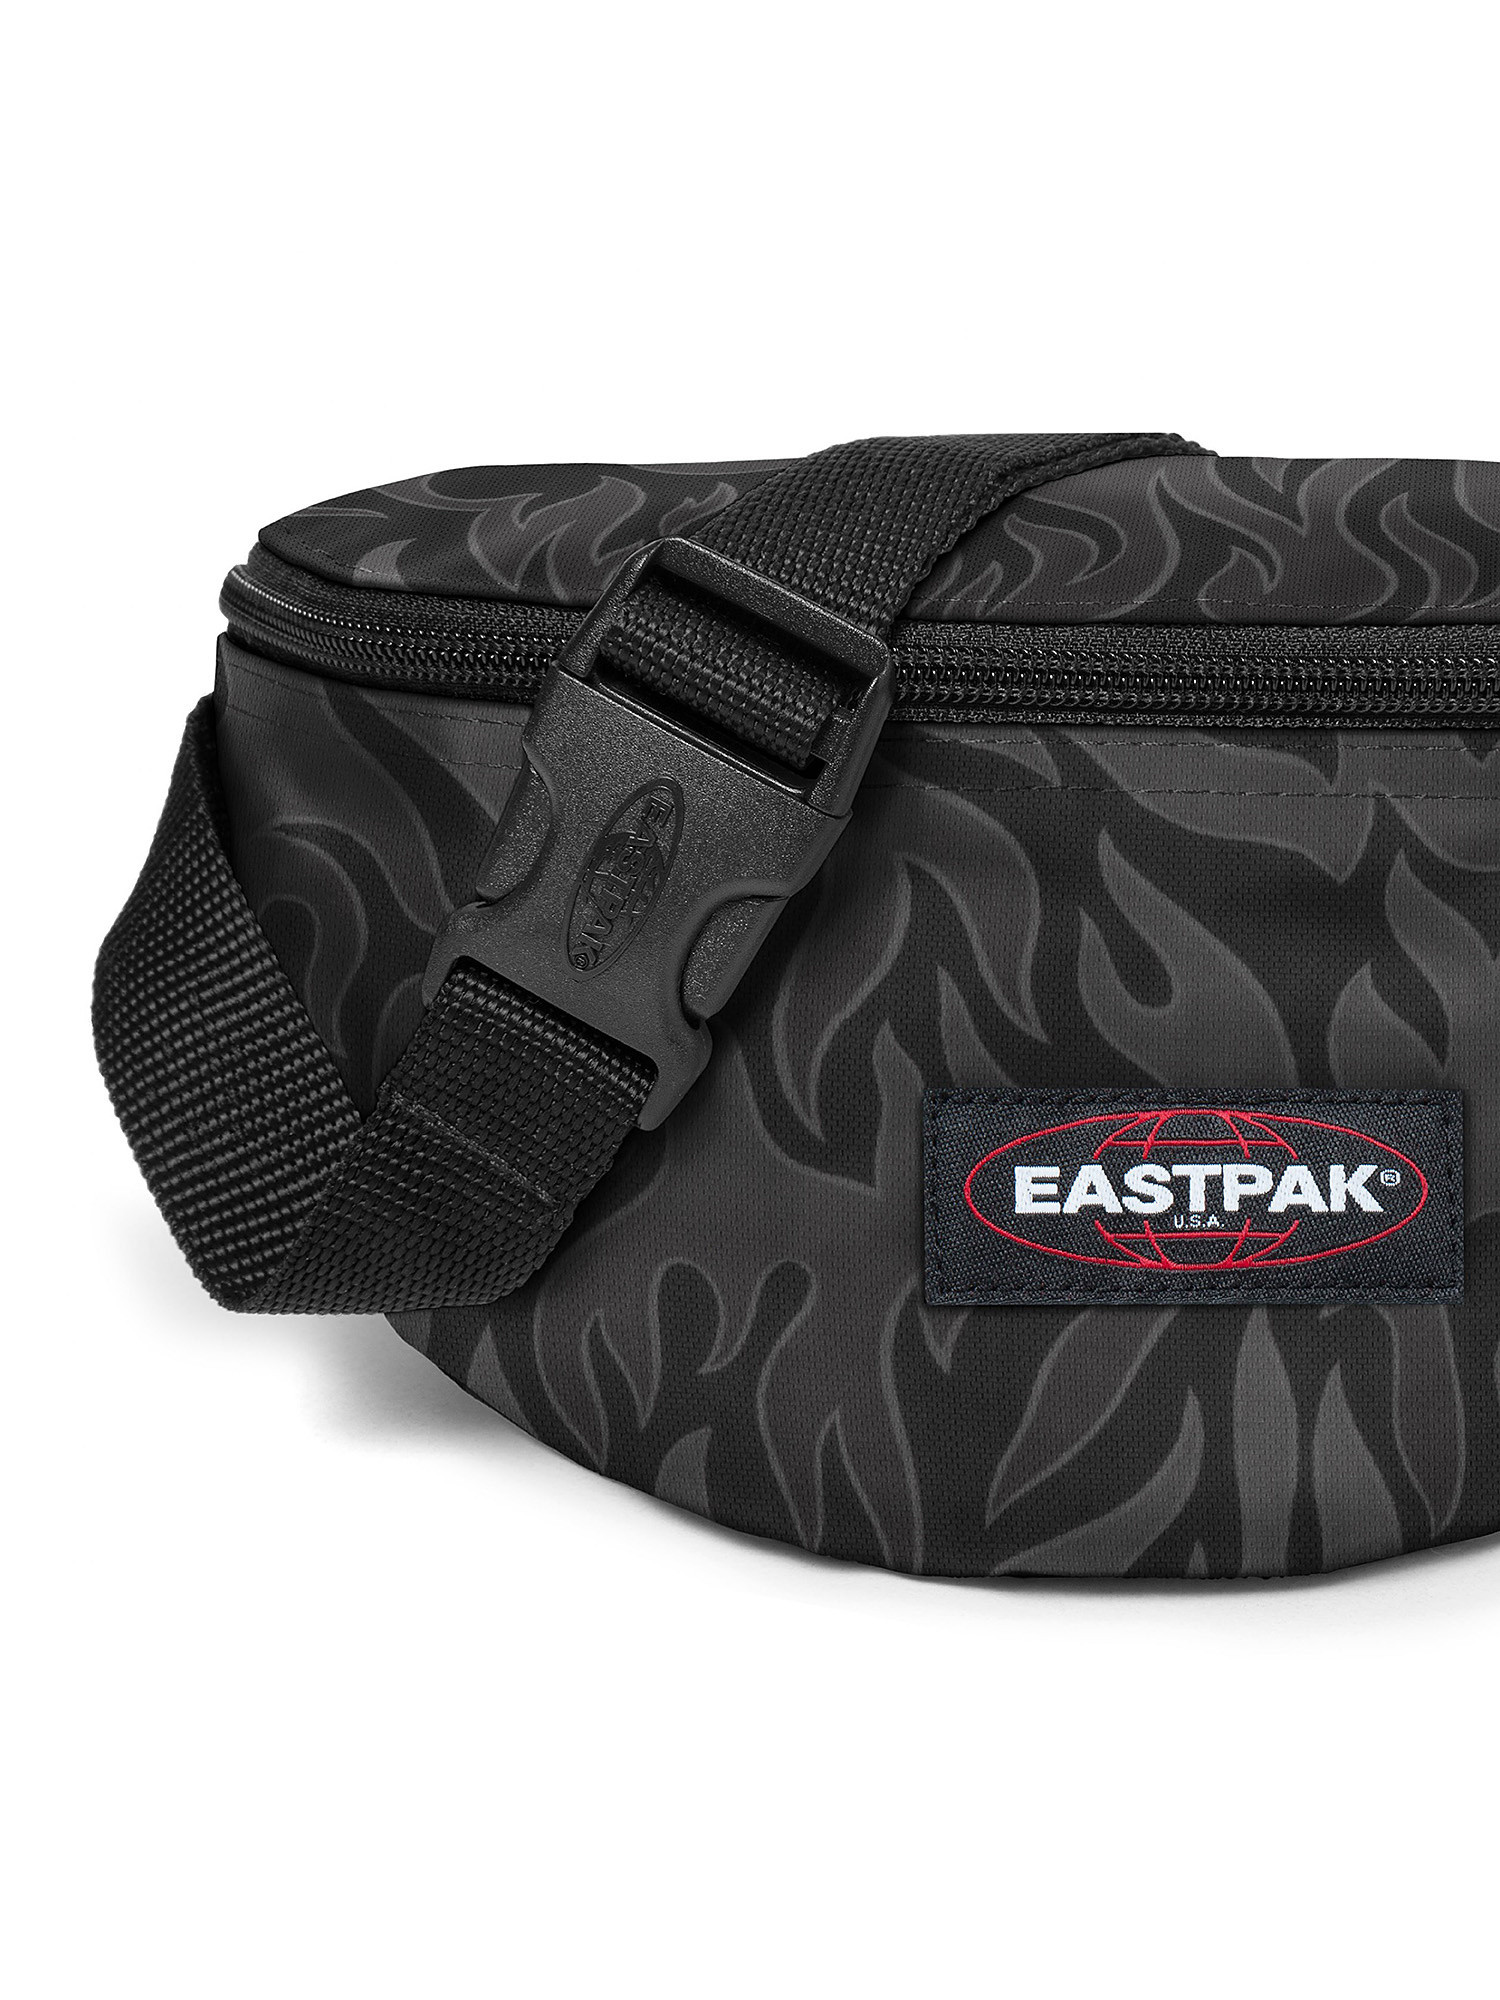 Eastpak - Springer Skate Flames Waist Bag, Black, large image number 3